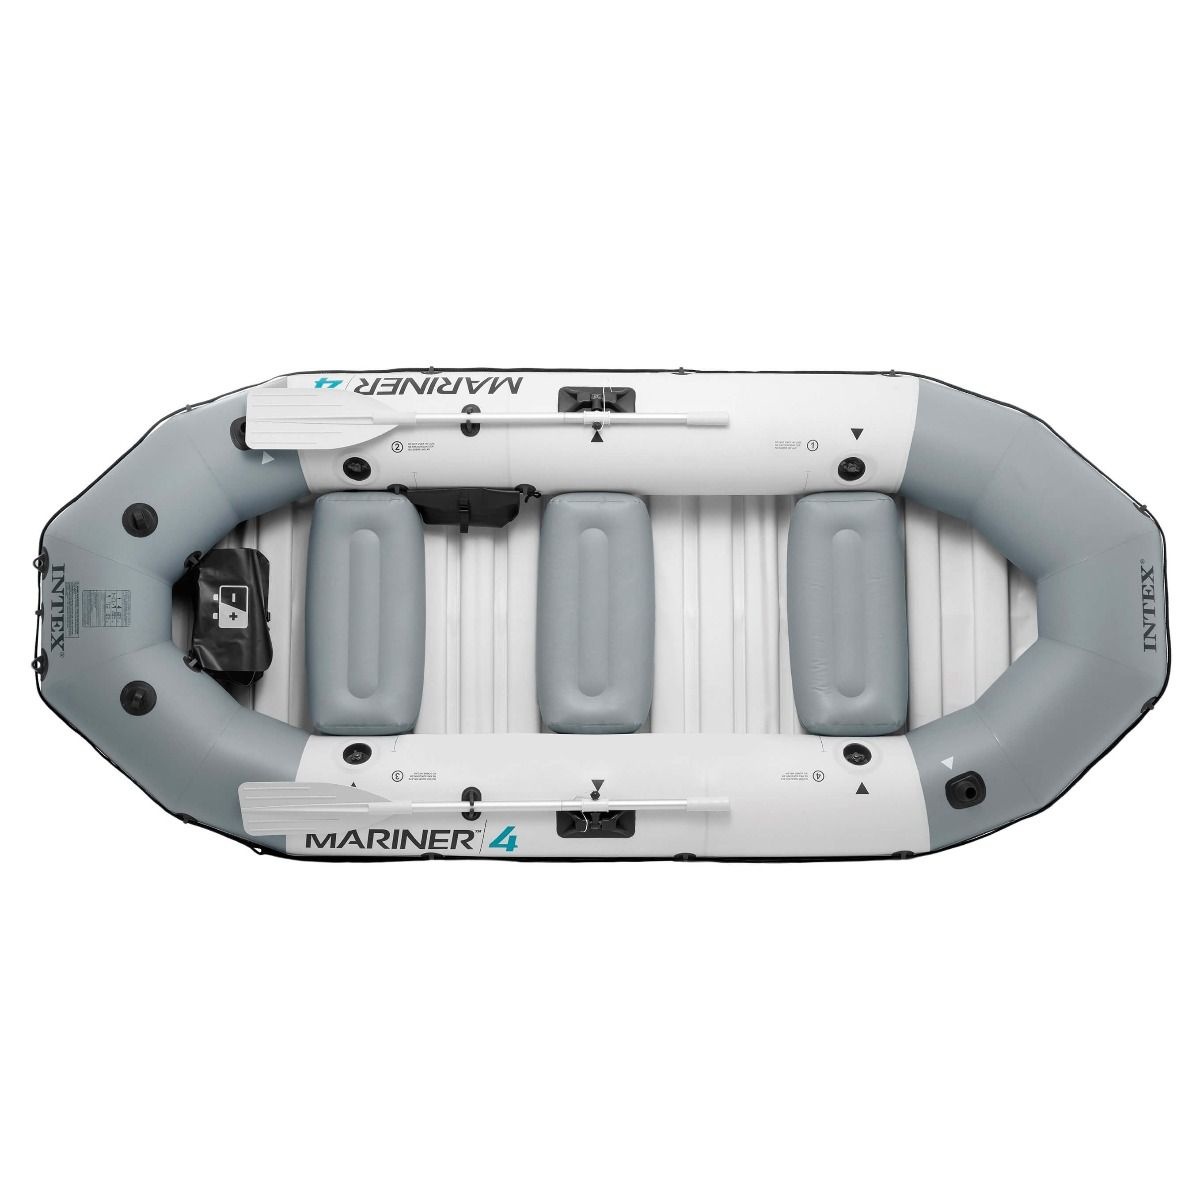 Intex Mariner - Opblaasboot voor 4 personen | Boot4.nl